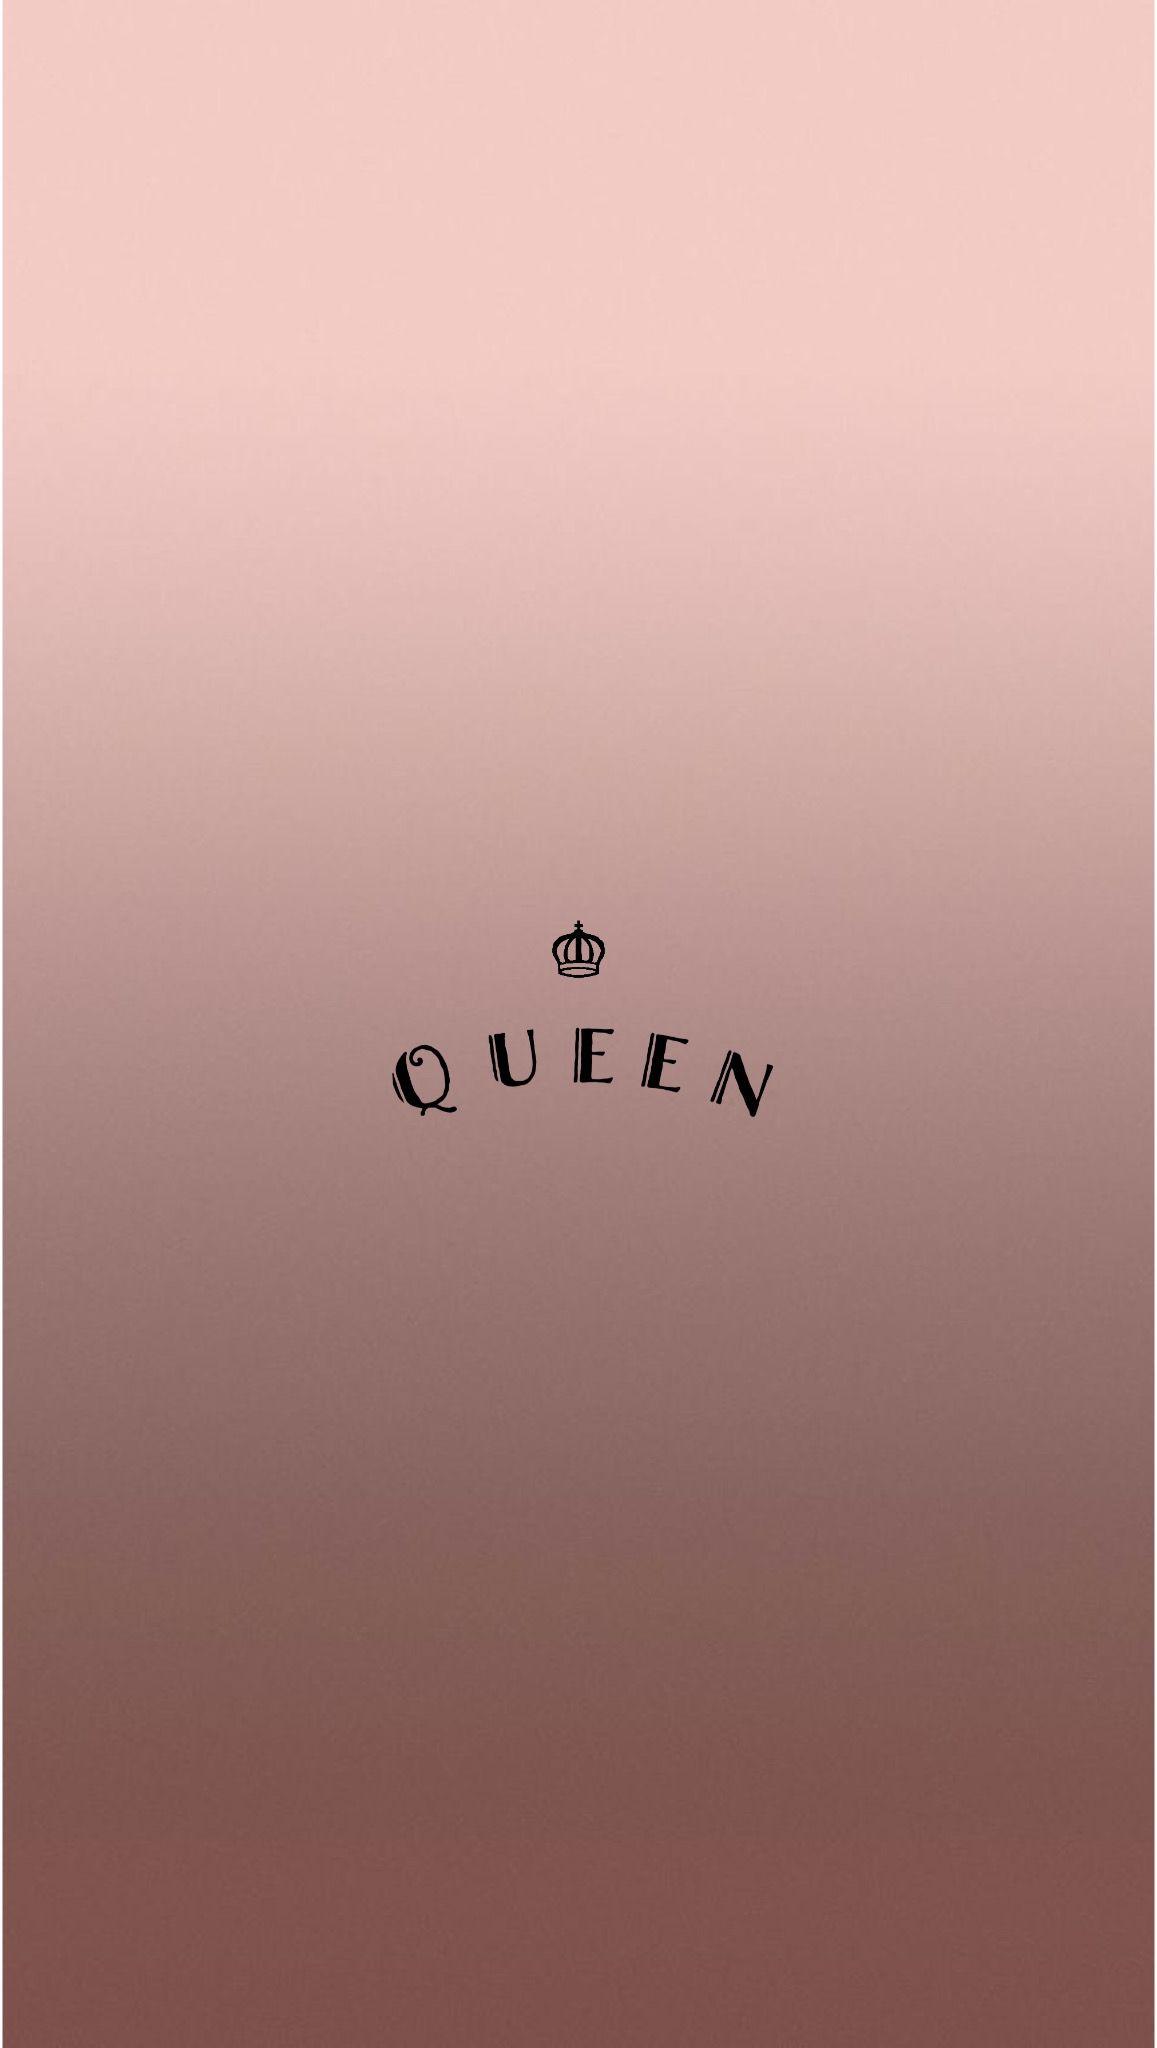 Rose Gold Queen iPhone Wallpaper. kween